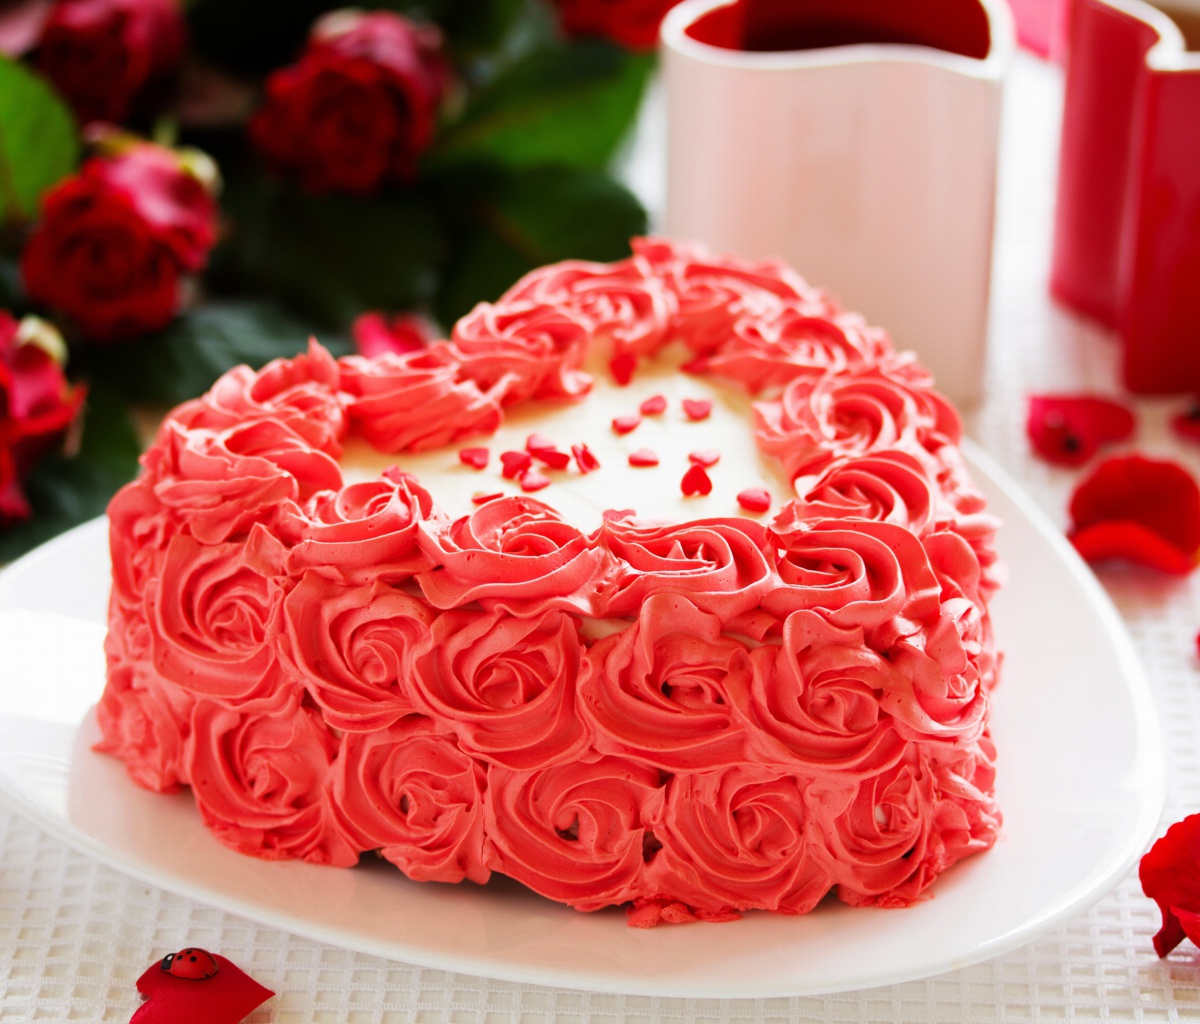 Das Sweet Red Heart Cake Wallpaper 1200x1024